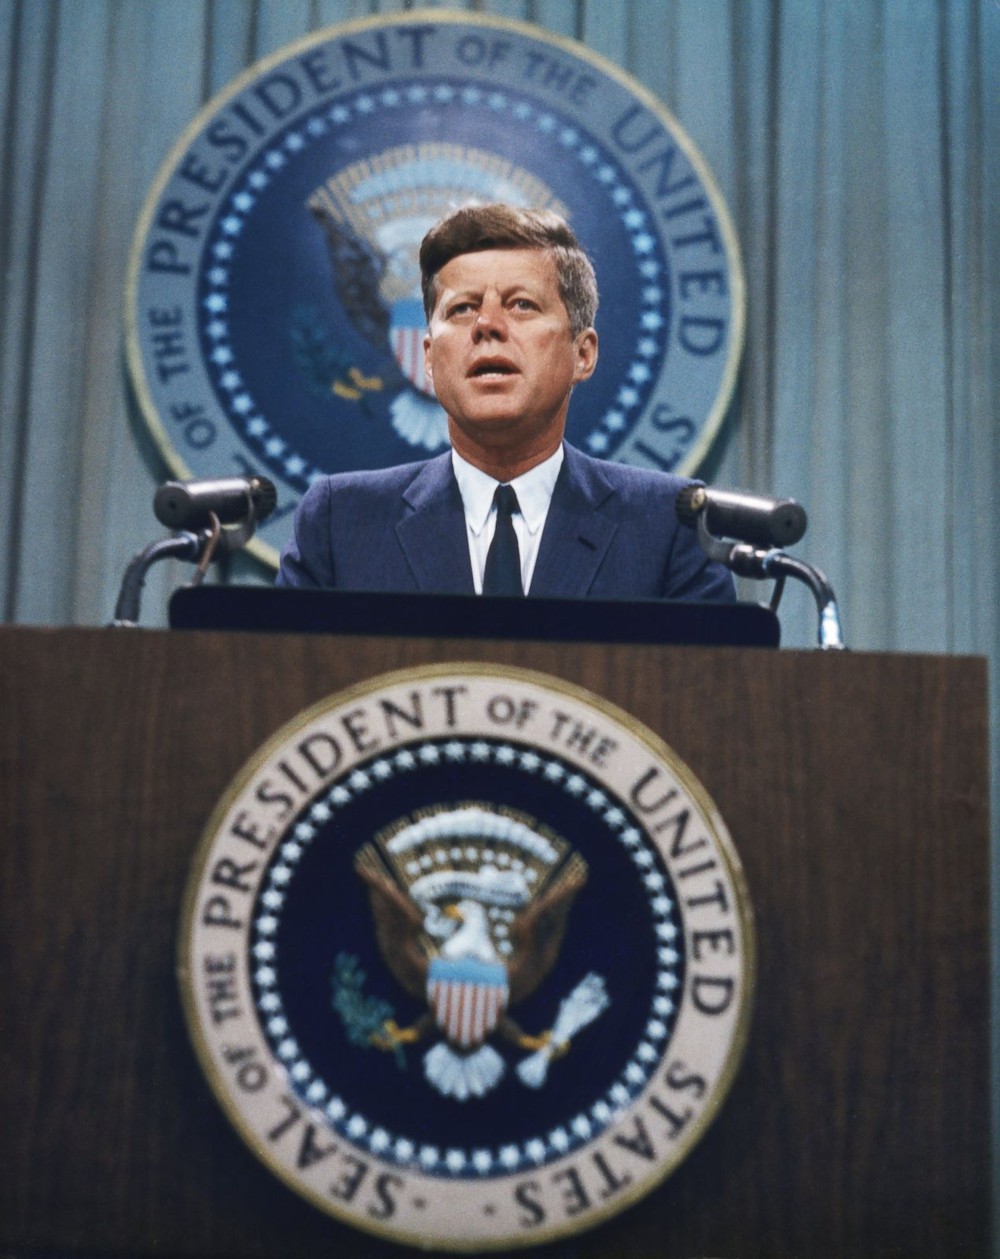 60 năm sau bài phát biểu đưa người Mỹ lên Mặt Trăng, xuất hiện thuyết âm mưu điên rồ về cái chết của TT Kennedy - Ảnh 1.